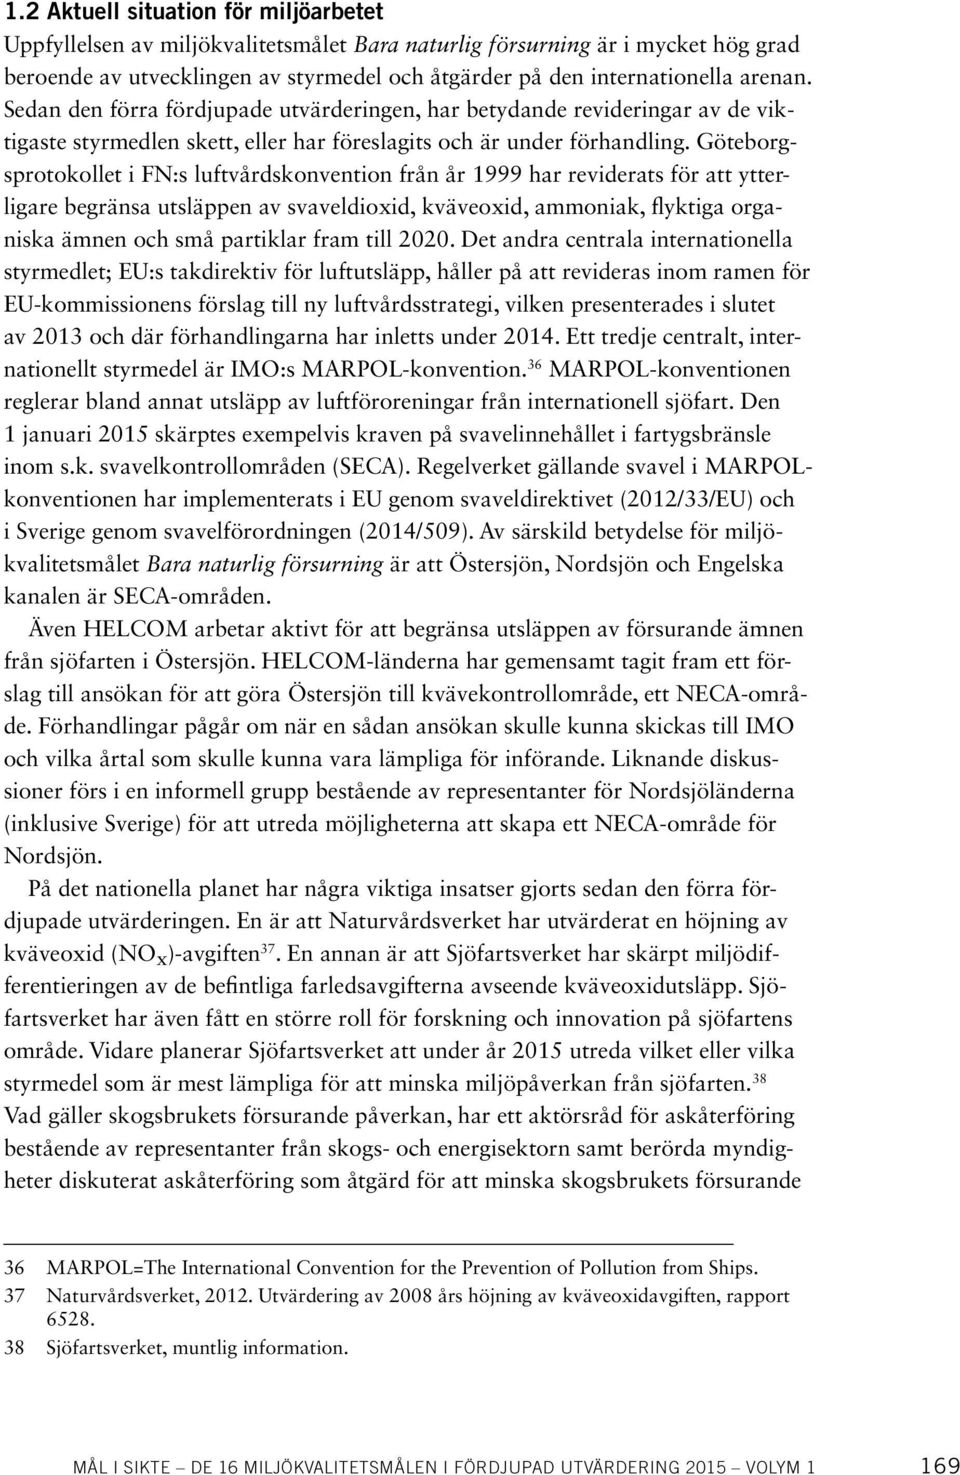 Göteborgsprotokollet i FN:s luftvårdskonvention från år 1999 har reviderats för att ytterligare begränsa utsläppen av svaveldioxid, kväveoxid, ammoniak, flyktiga organiska ämnen och små partiklar